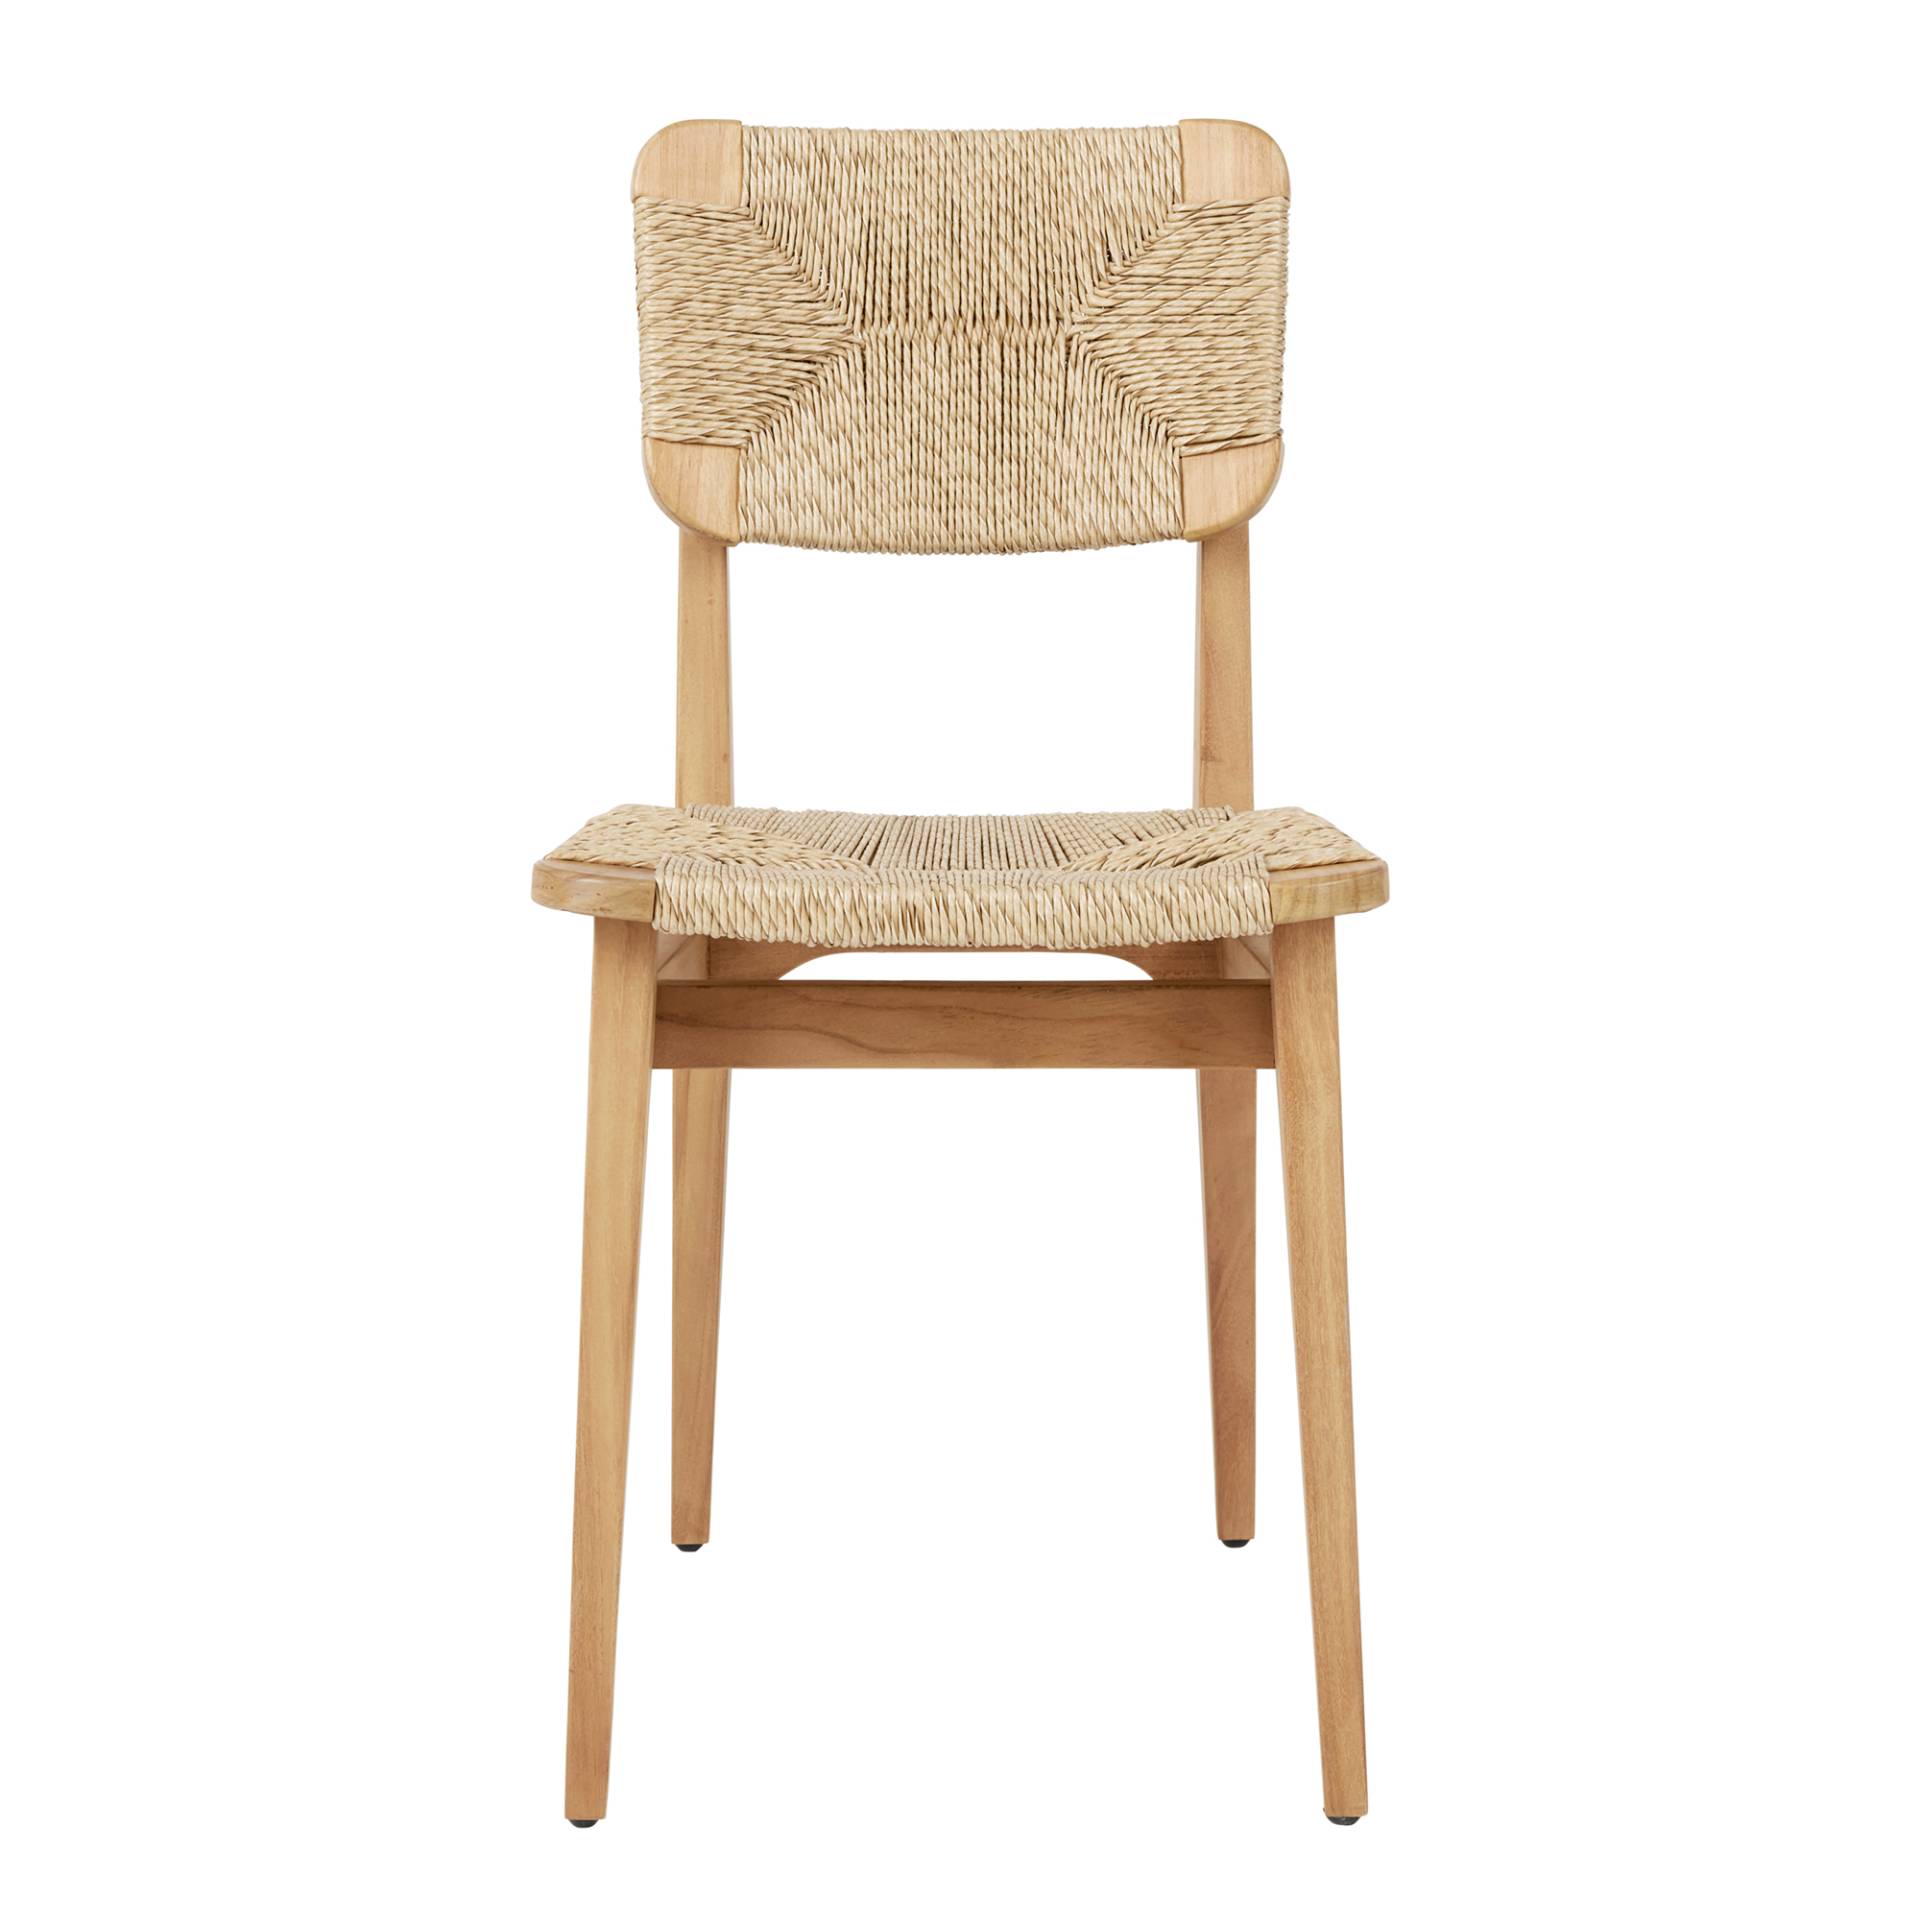 Gubi - C-Chair Outdoor Dining Chair - Teak natur/beige/HDPE-Geflecht/BxHxT 41x81x53cm/Beschläge Edelstahl/Kunststoffgleiter von Gubi